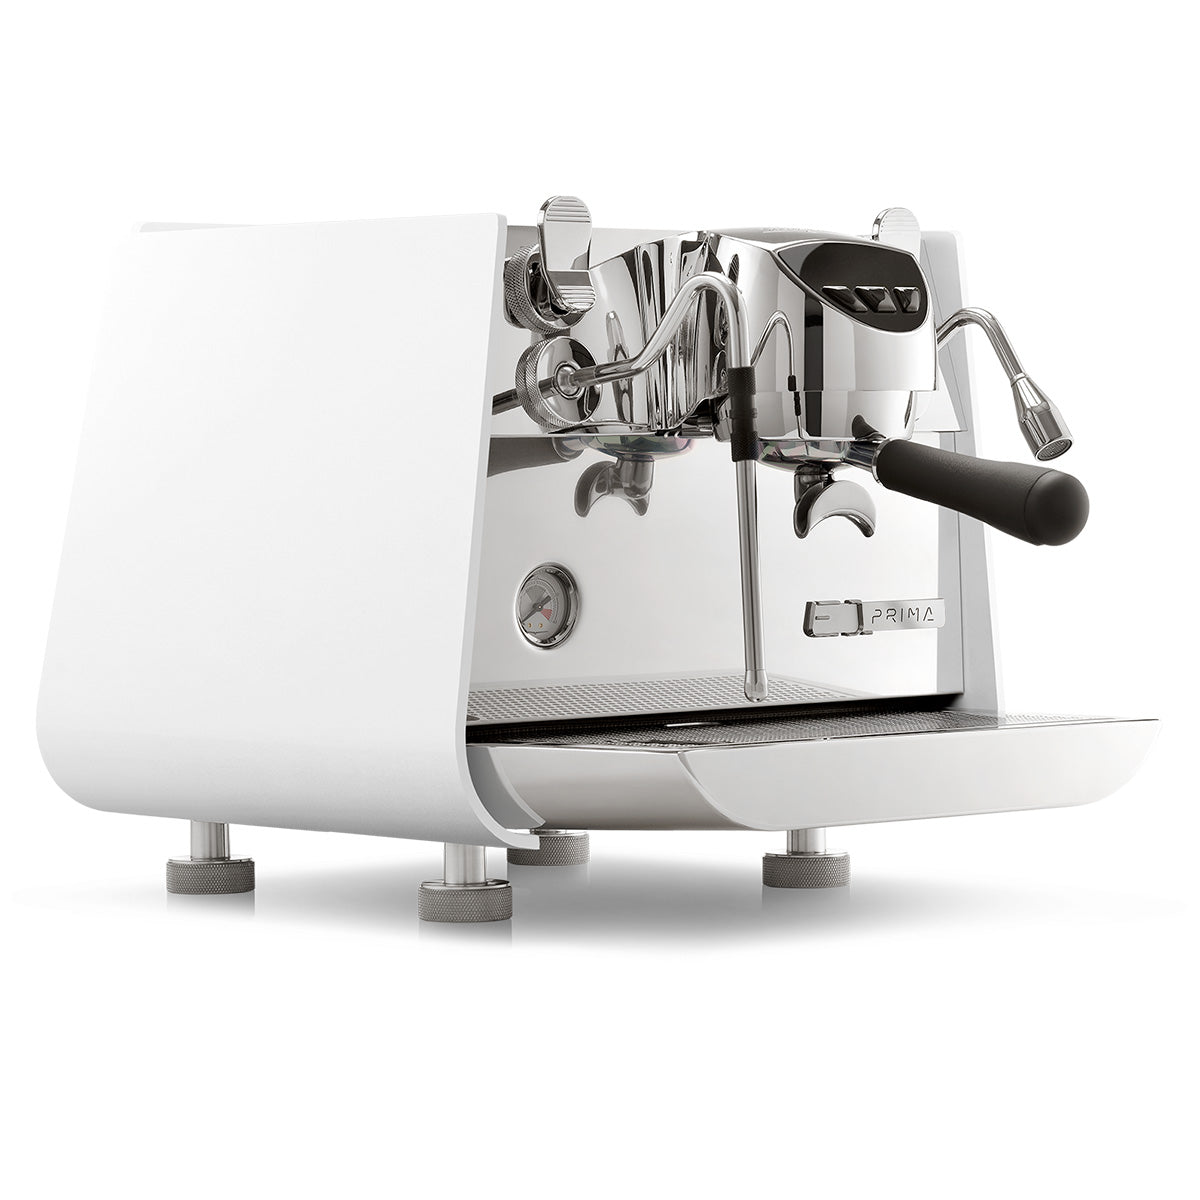 Cafetera espresso Victoria Arduino Eagle One Prima blanca - Doble caldera